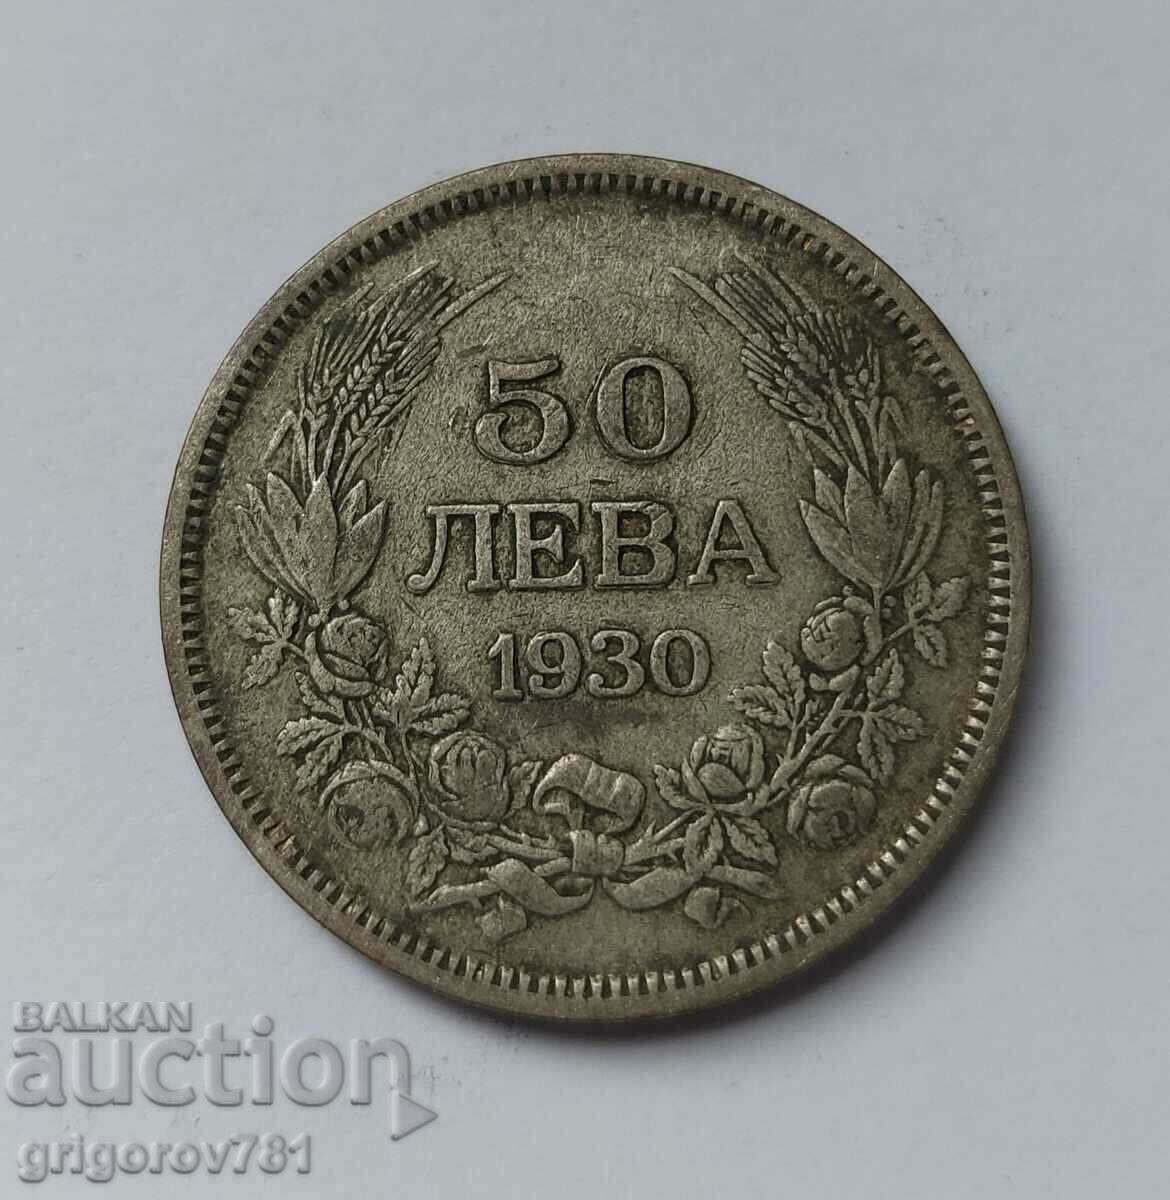 Ασήμι 50 λέβα Βουλγαρία 1930 - ασημένιο νόμισμα #44